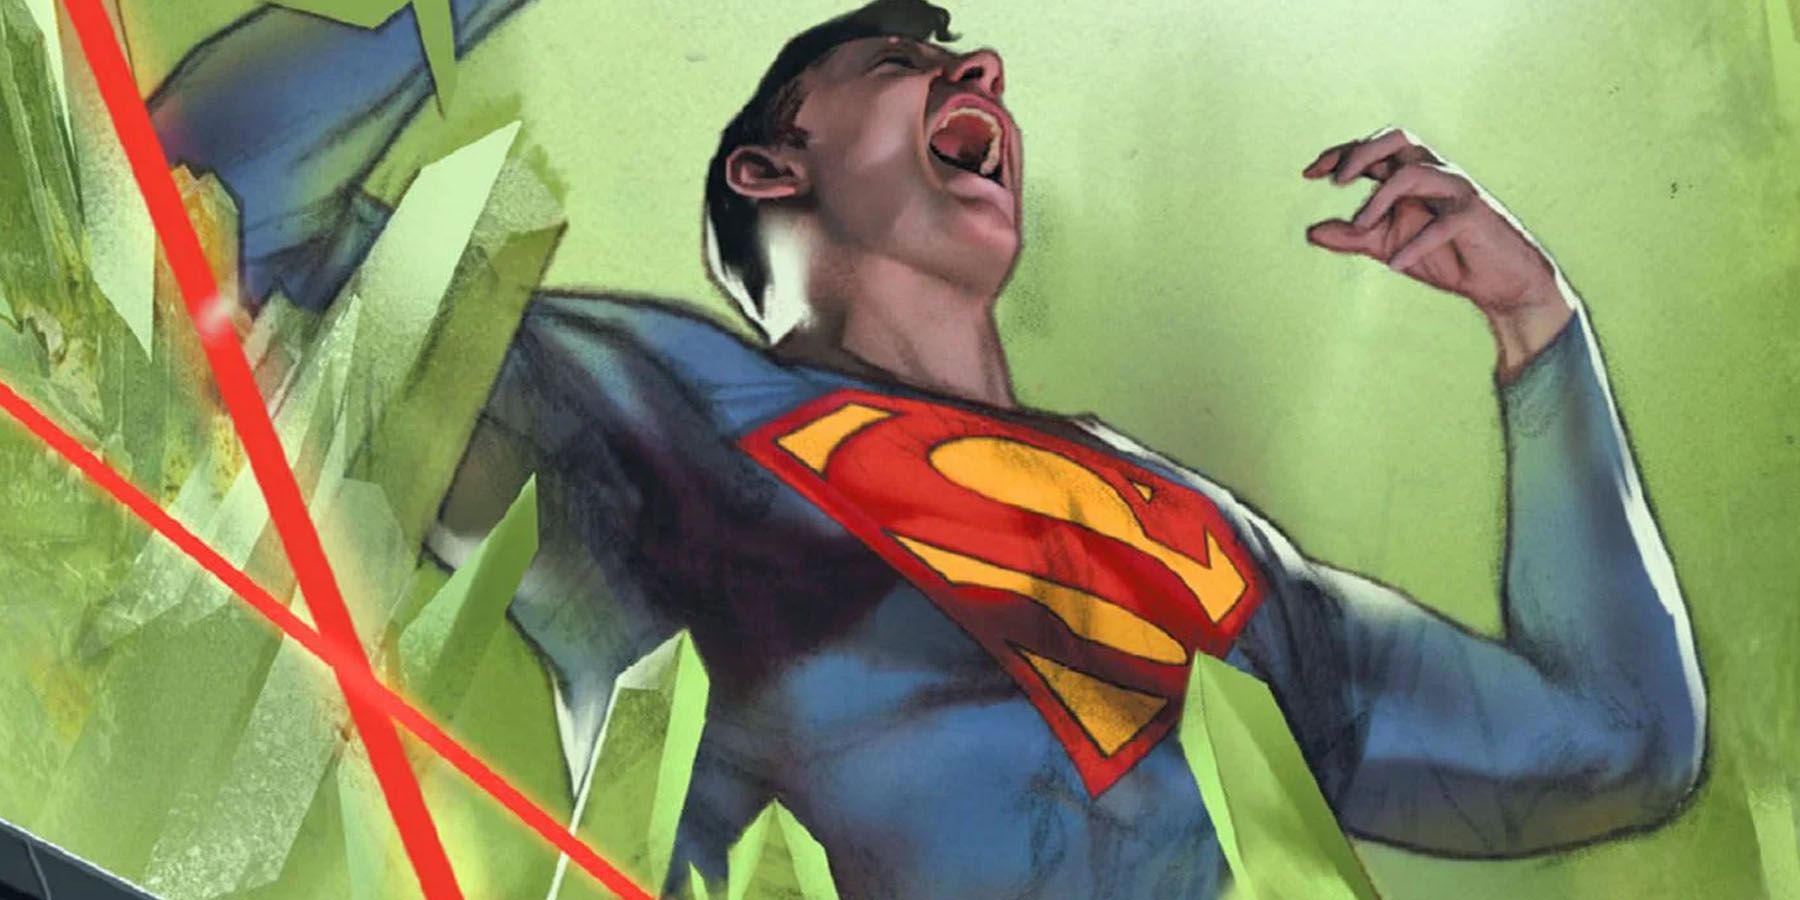 Superman weakened by Kryptonite